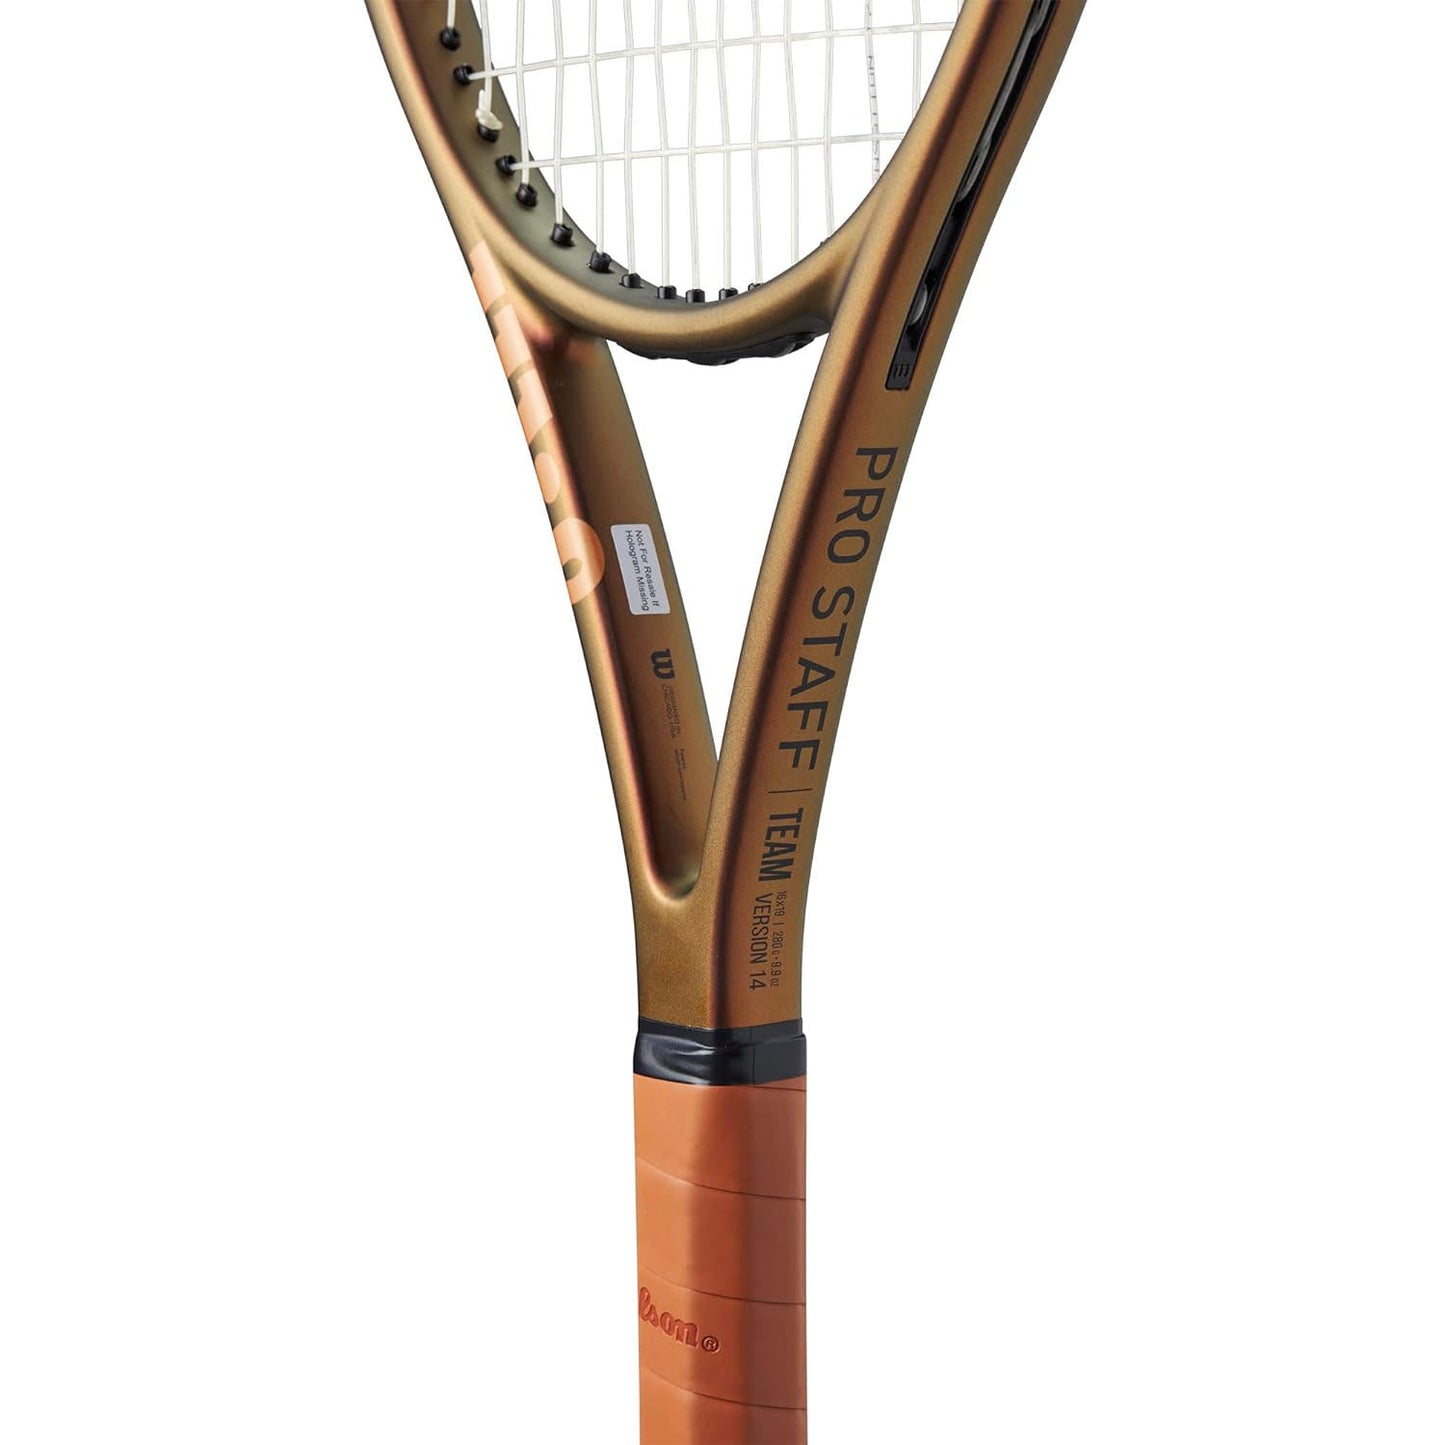 Wilson Pro Staff 97 V14 FRM 3 Unstrung Tennis Racquet - Best Price online Prokicksports.com